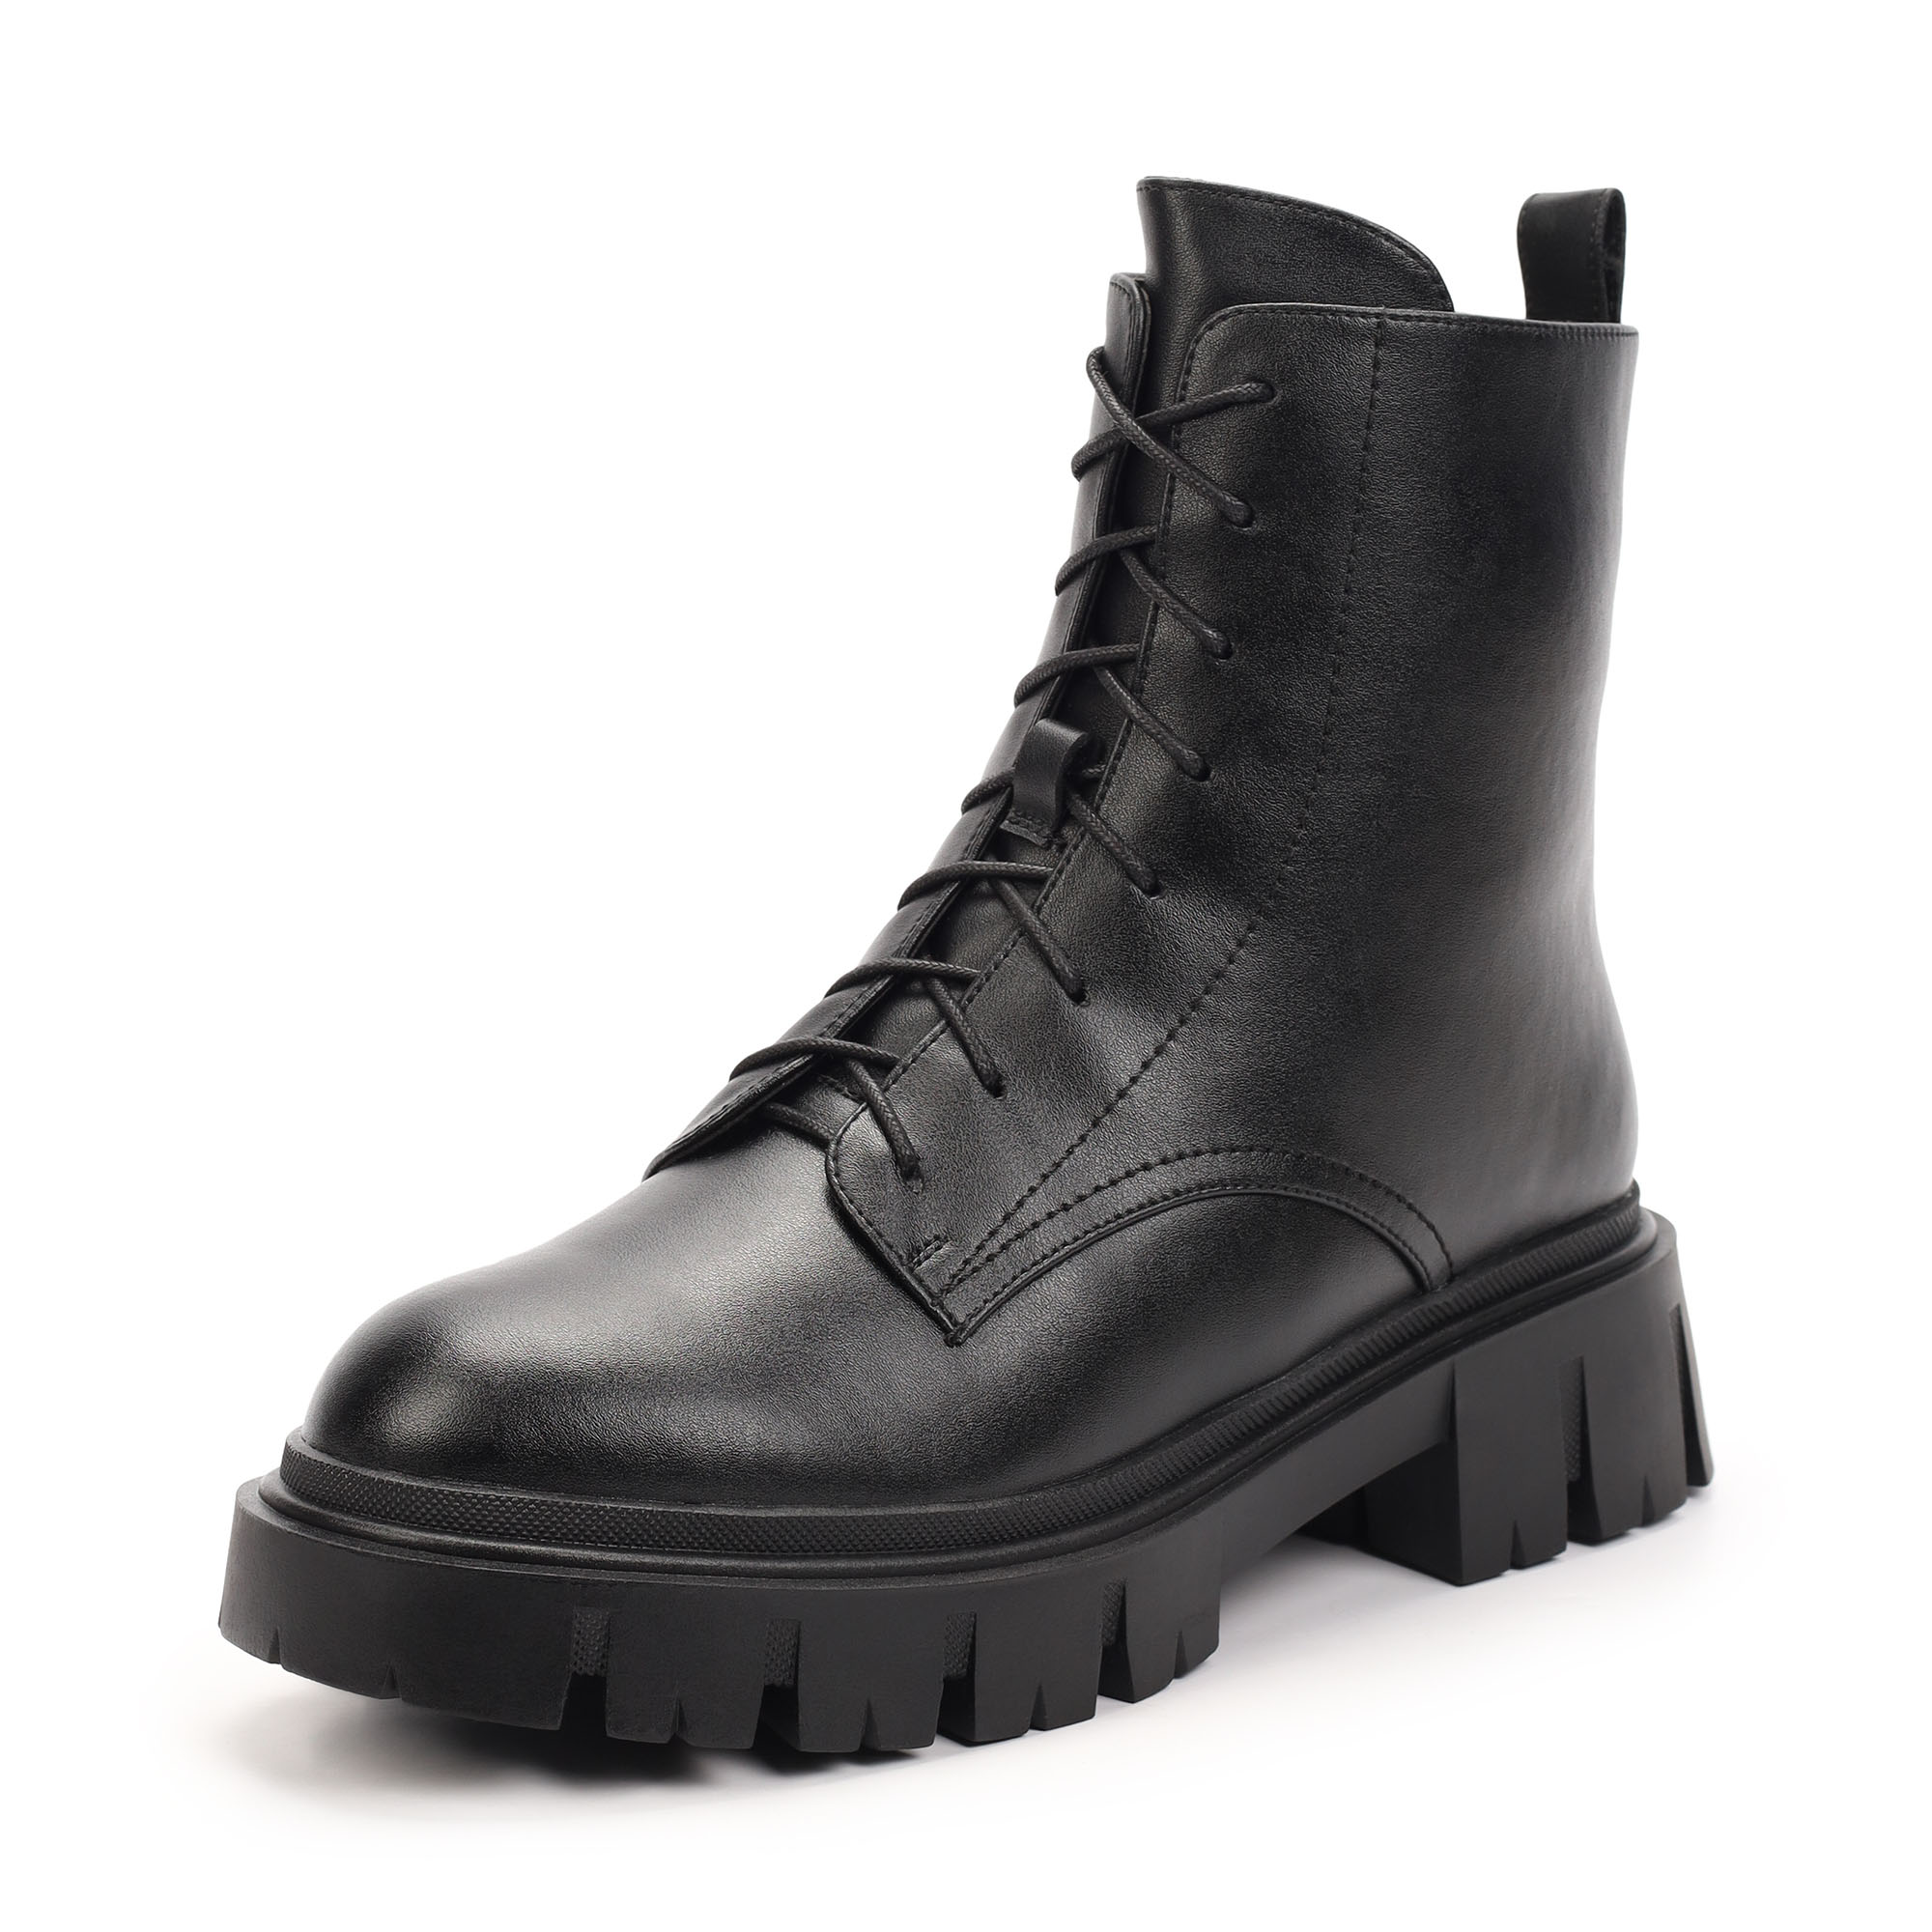 Ботинки Thomas Munz 094-235A-5602, цвет черный, размер 38 - фото 2